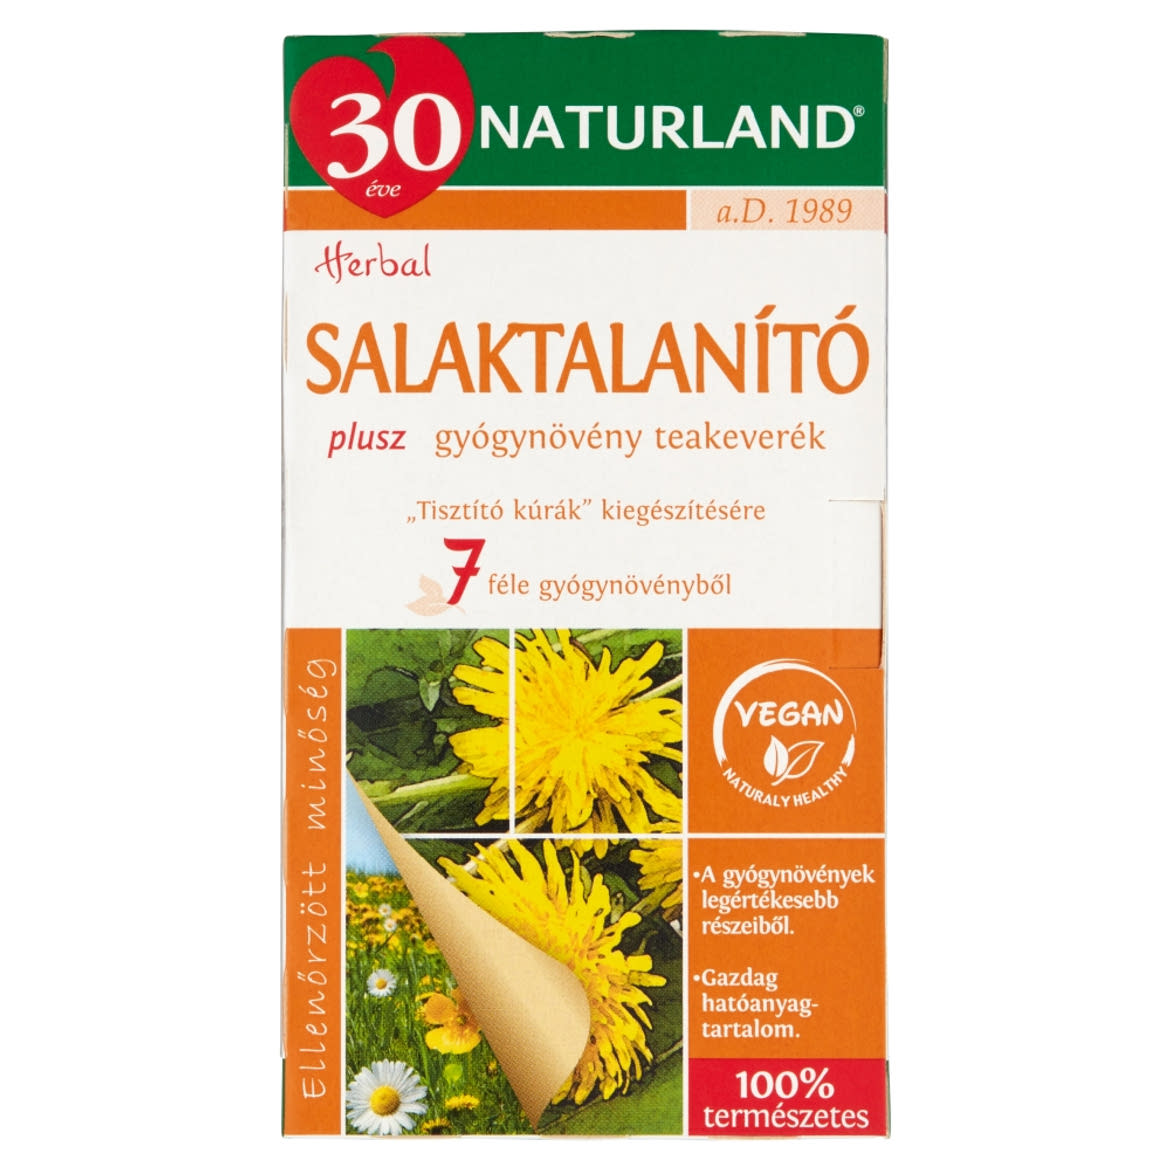 Naturland Herbal salaktalanító plusz gyógynövény teakeverék